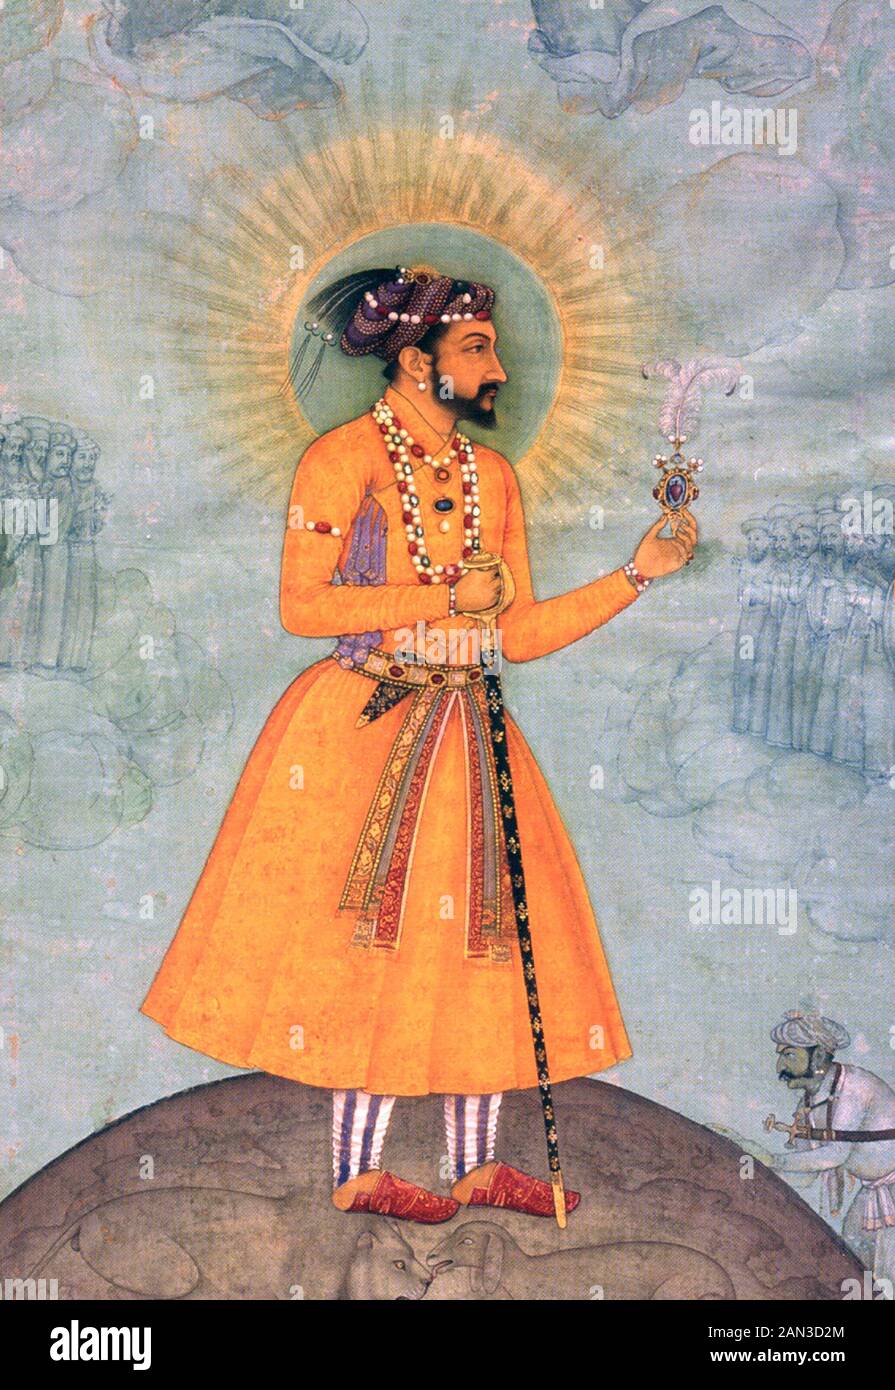 SHAH JAHAN (1592-1666) cinquième empereur moghol qui a créé le Taj Mahal Banque D'Images